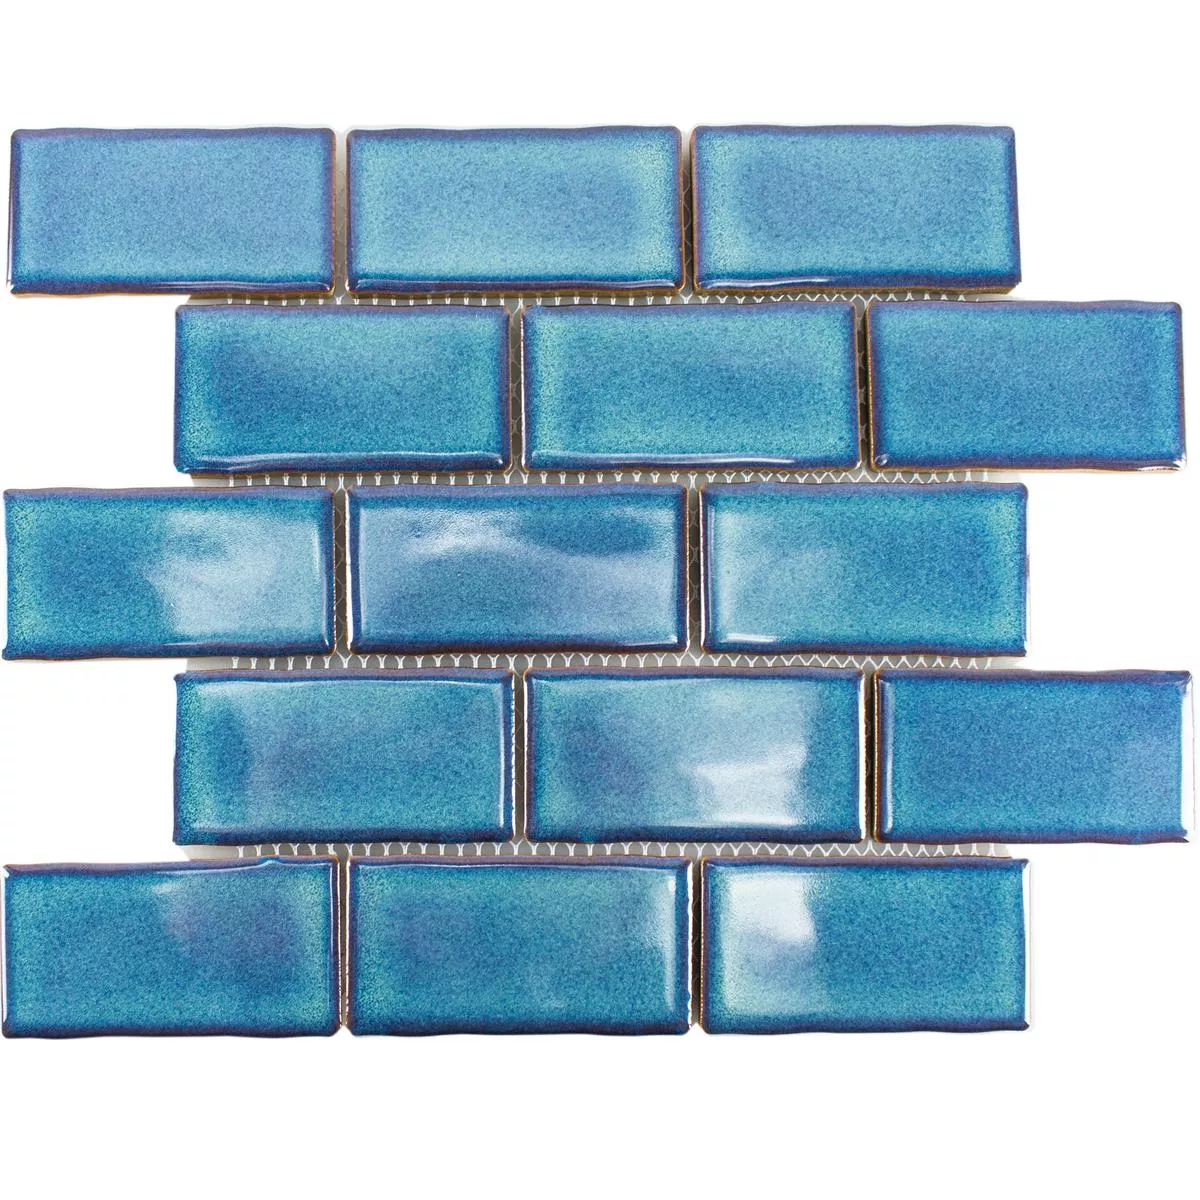 Fazekasság Mozaik Csempe Florenz Kézzel Készített Kék